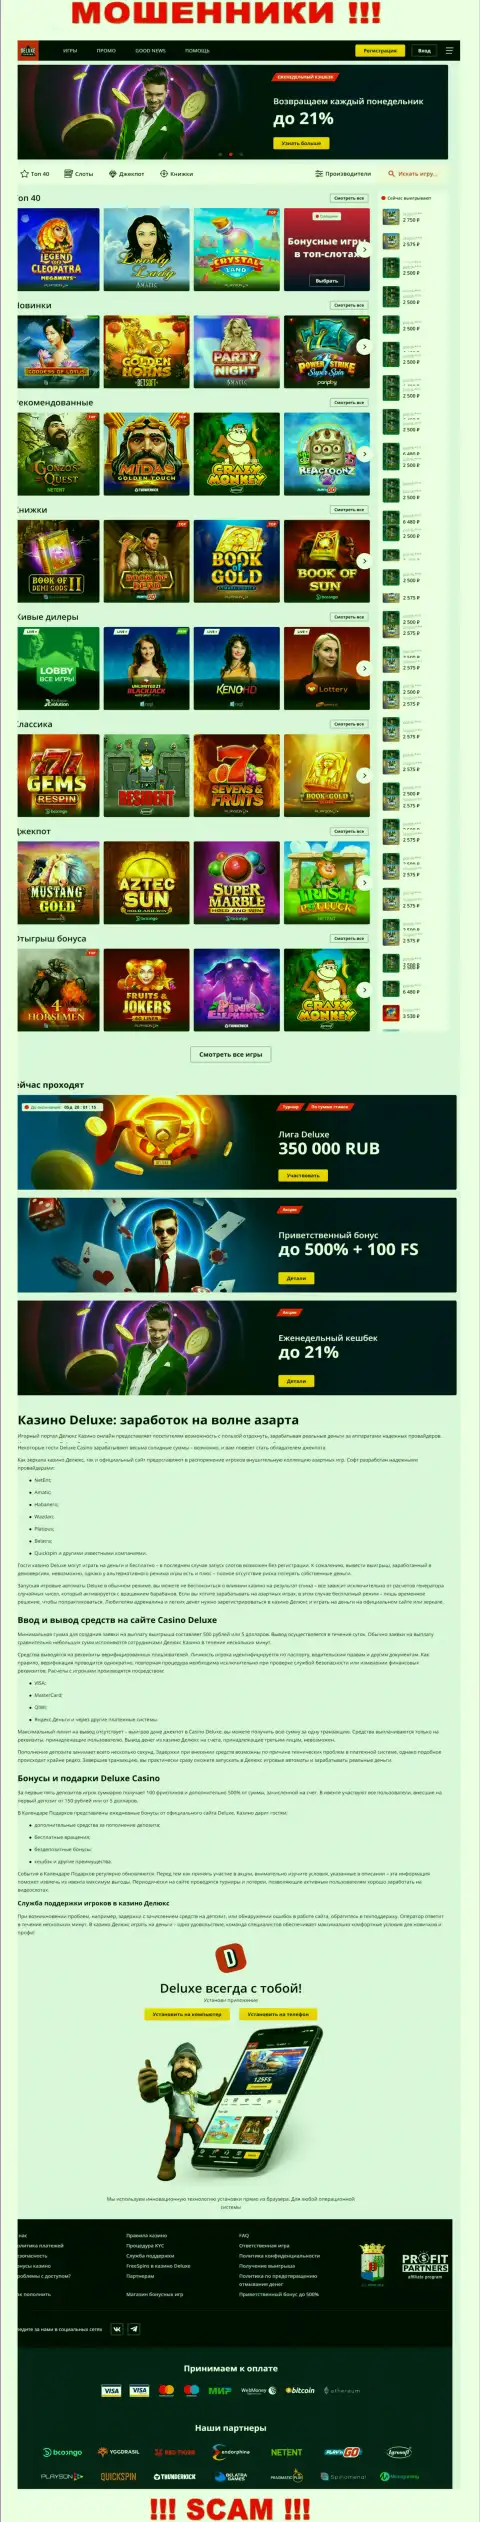 Официальная internet страница организации Deluxe Casino